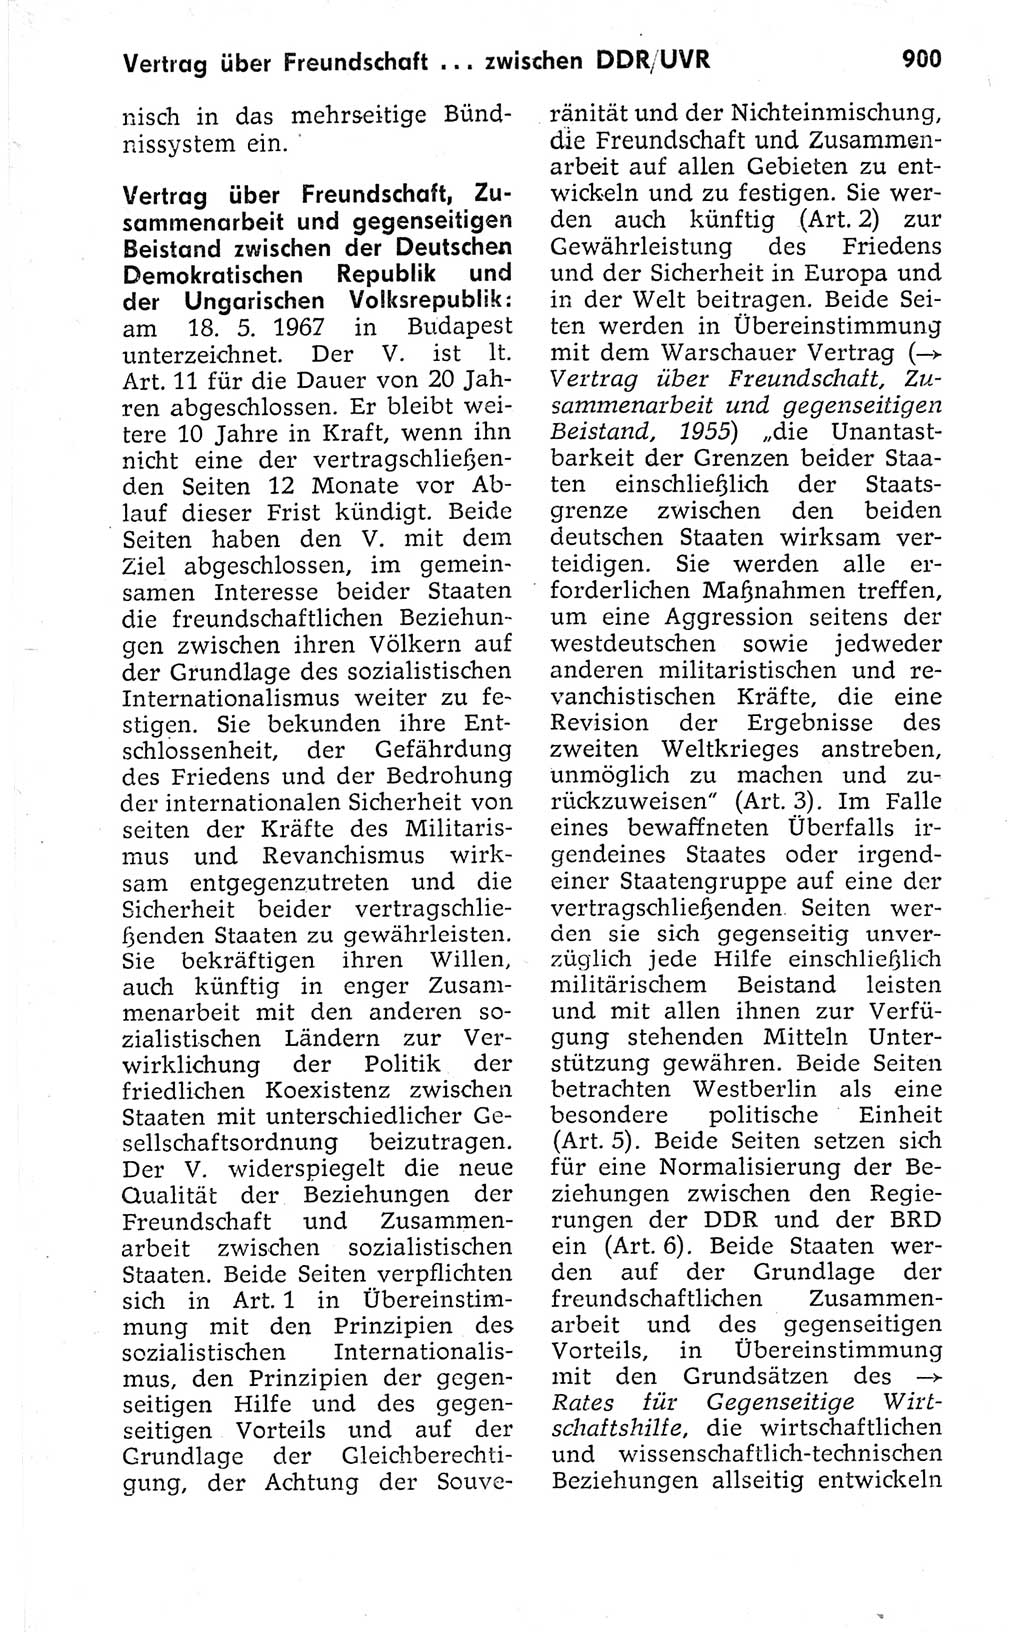 Kleines politisches Wörterbuch [Deutsche Demokratische Republik (DDR)] 1973, Seite 900 (Kl. pol. Wb. DDR 1973, S. 900)